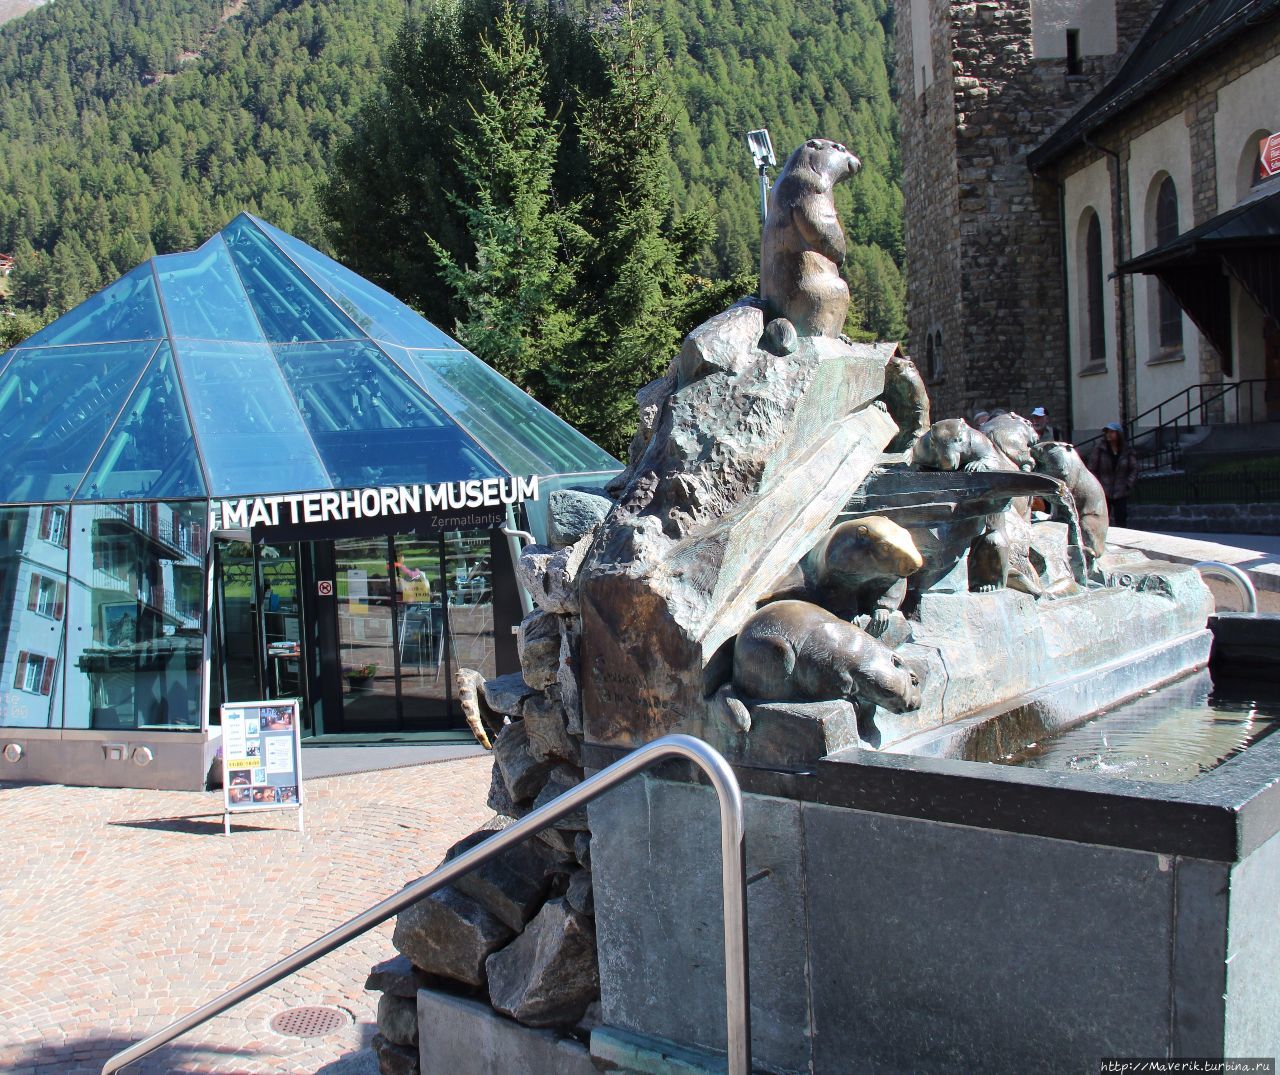 Церматт-знакомство с очаровательным альпийским городком Церматт, Швейцария